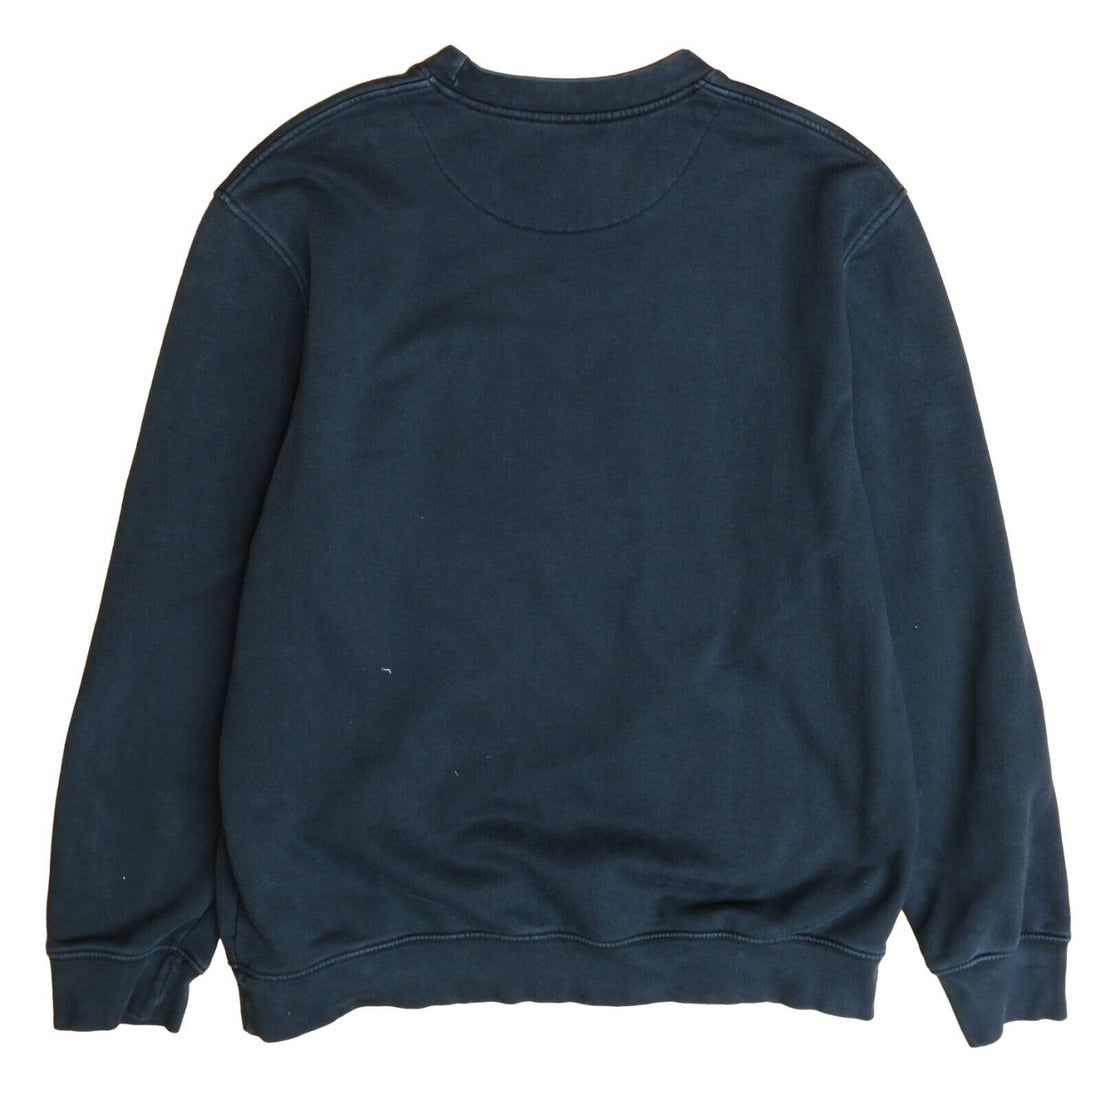 Vintage Nike Sweatshirt Crewneck Size Medium Black Embroidered Swoosh